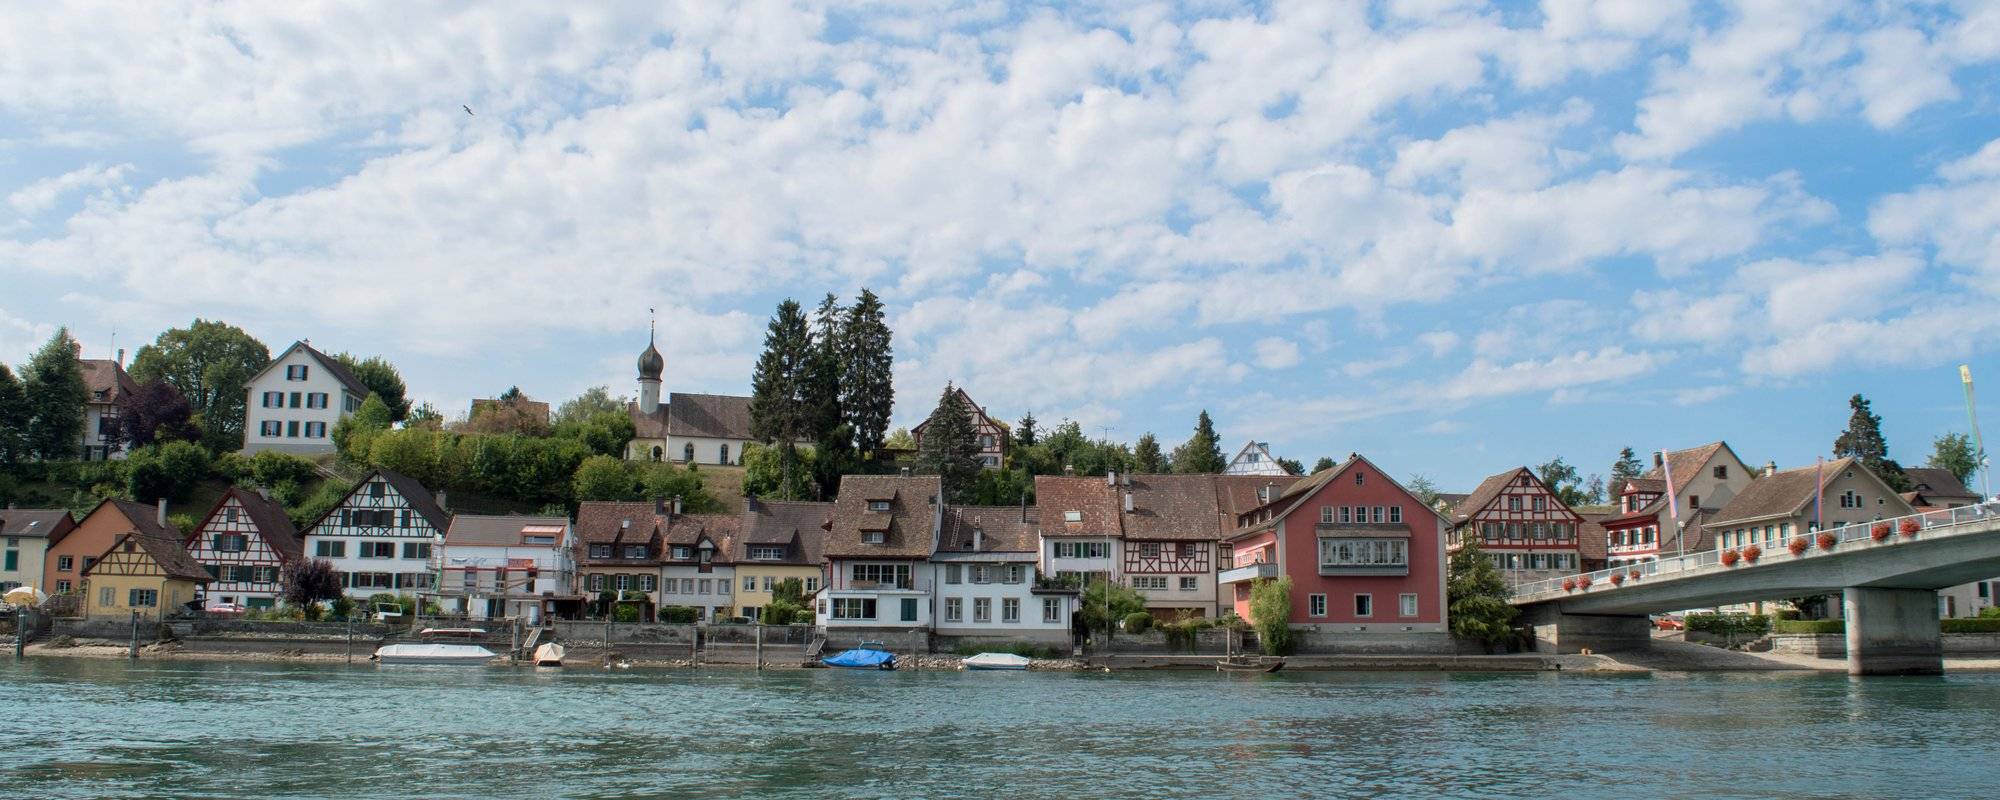 Switzerland travel series - part 5 - Stein am Rhein